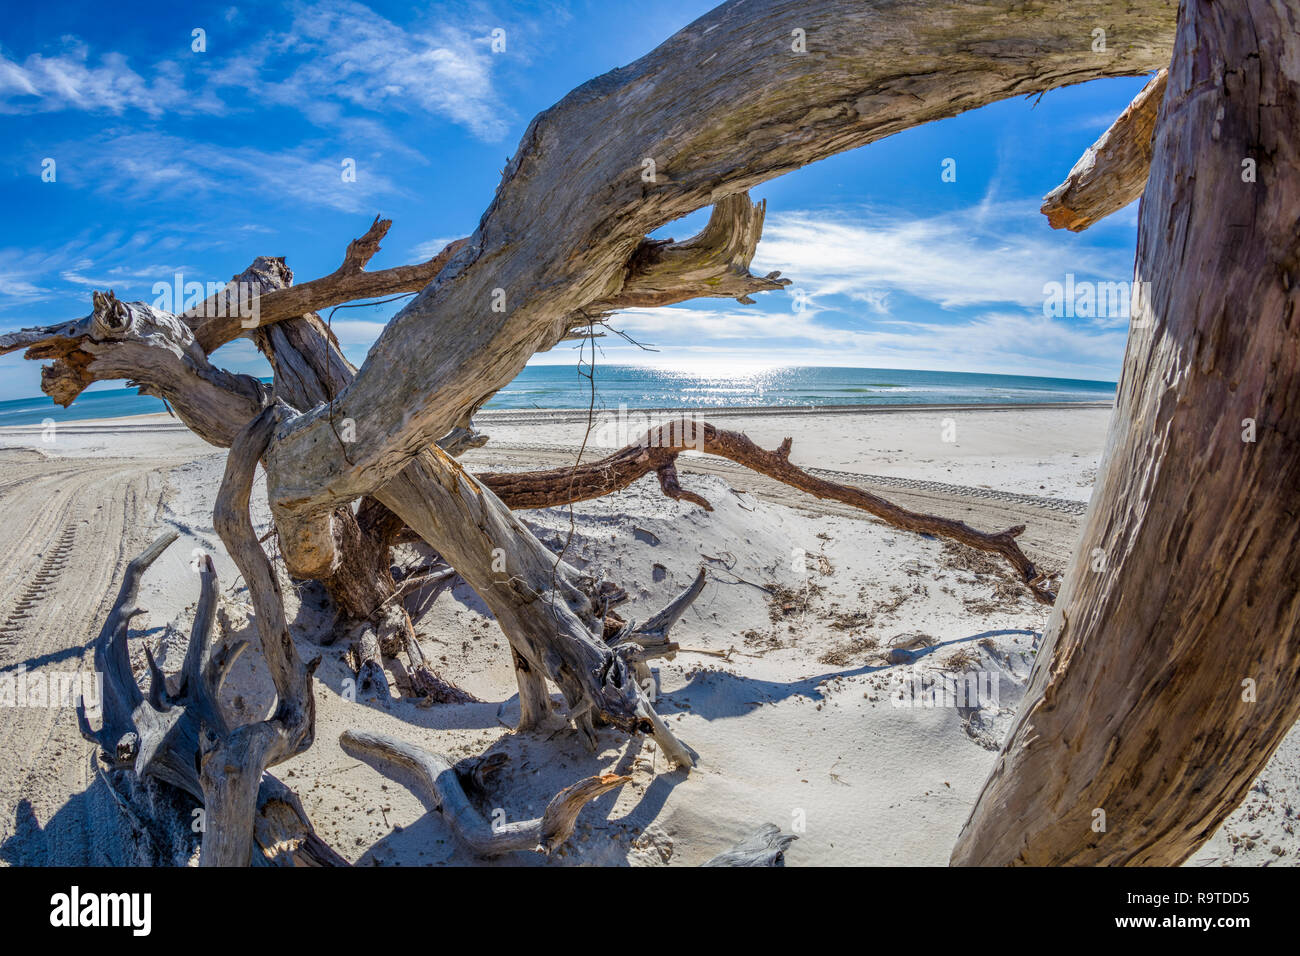 Treibholz am Golf von Mexiko Strand auf St. George Island im pfannenstiel oder vergessene Küste von Florida in den Vereinigten Staaten Stockfoto